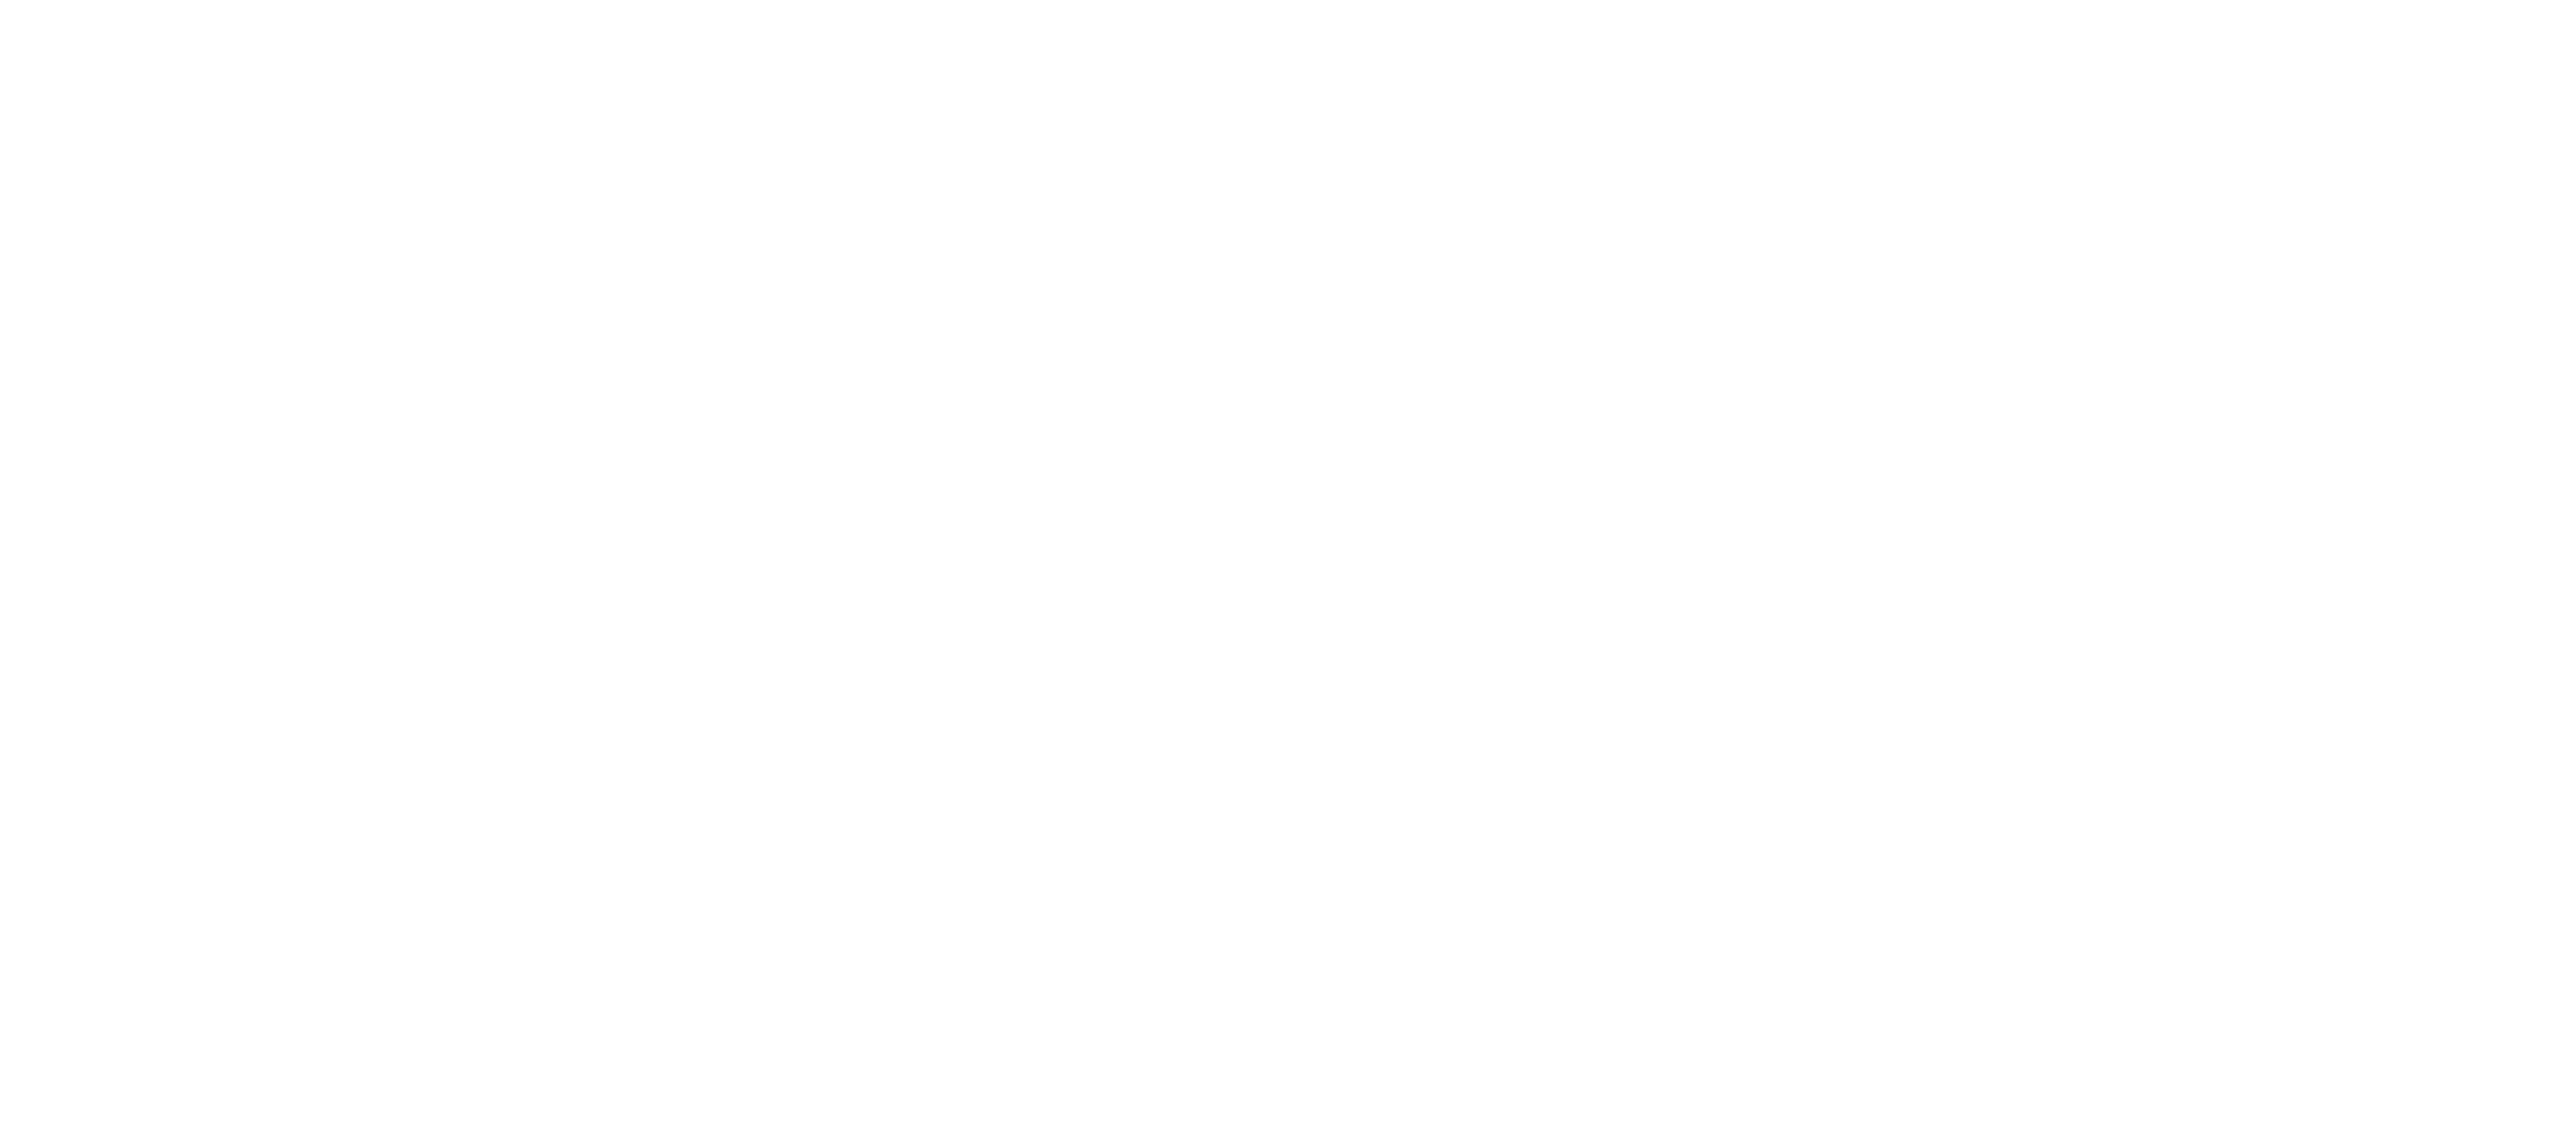 EKDAHAL-PROPERTY-MANAGEMENT-01-white